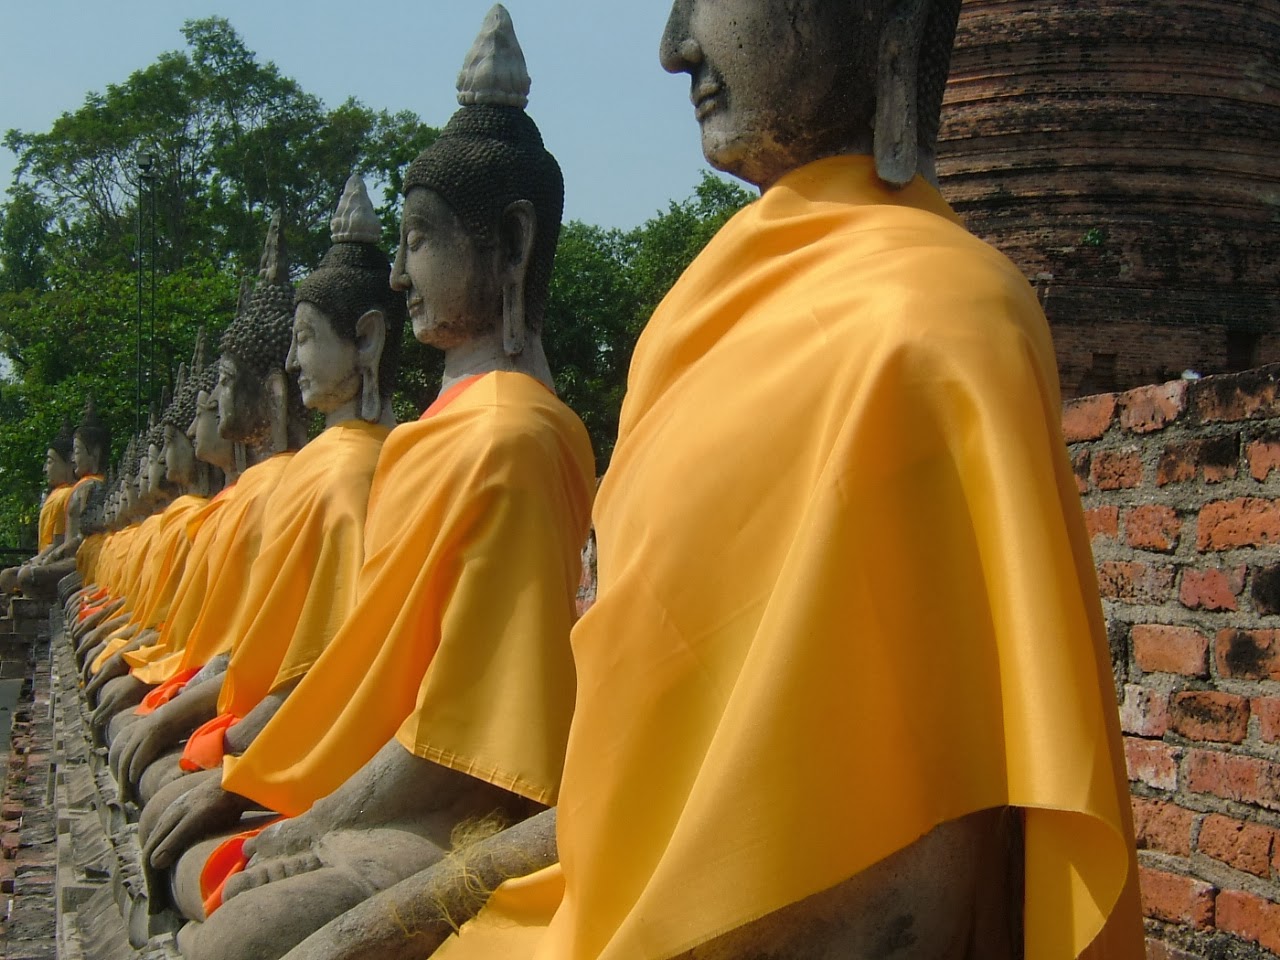 Stone statues of Buddha